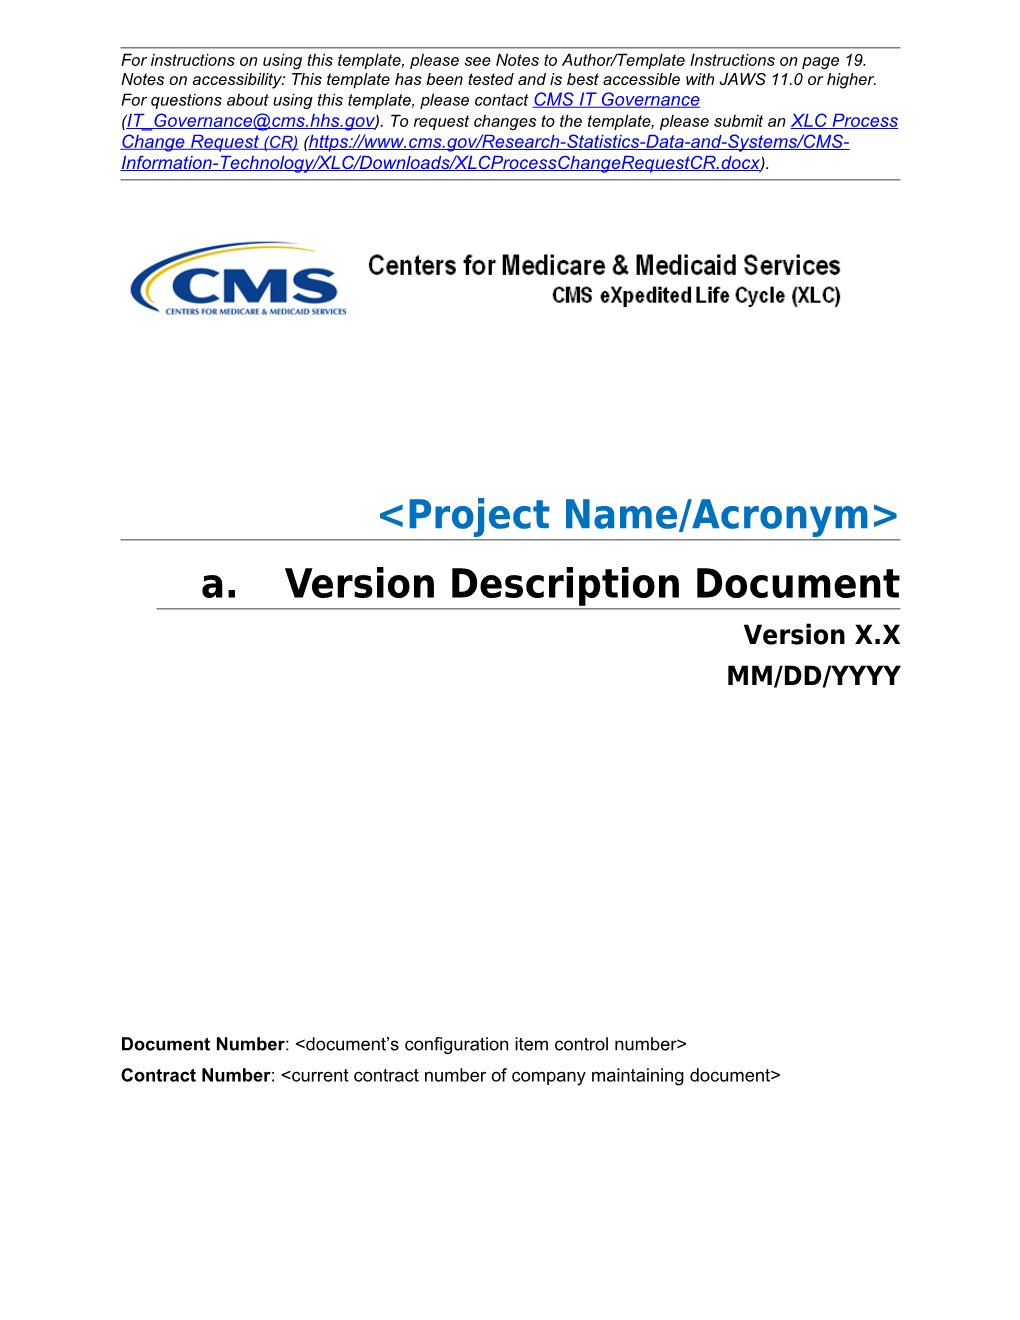 Version Description Document (VDD) Template